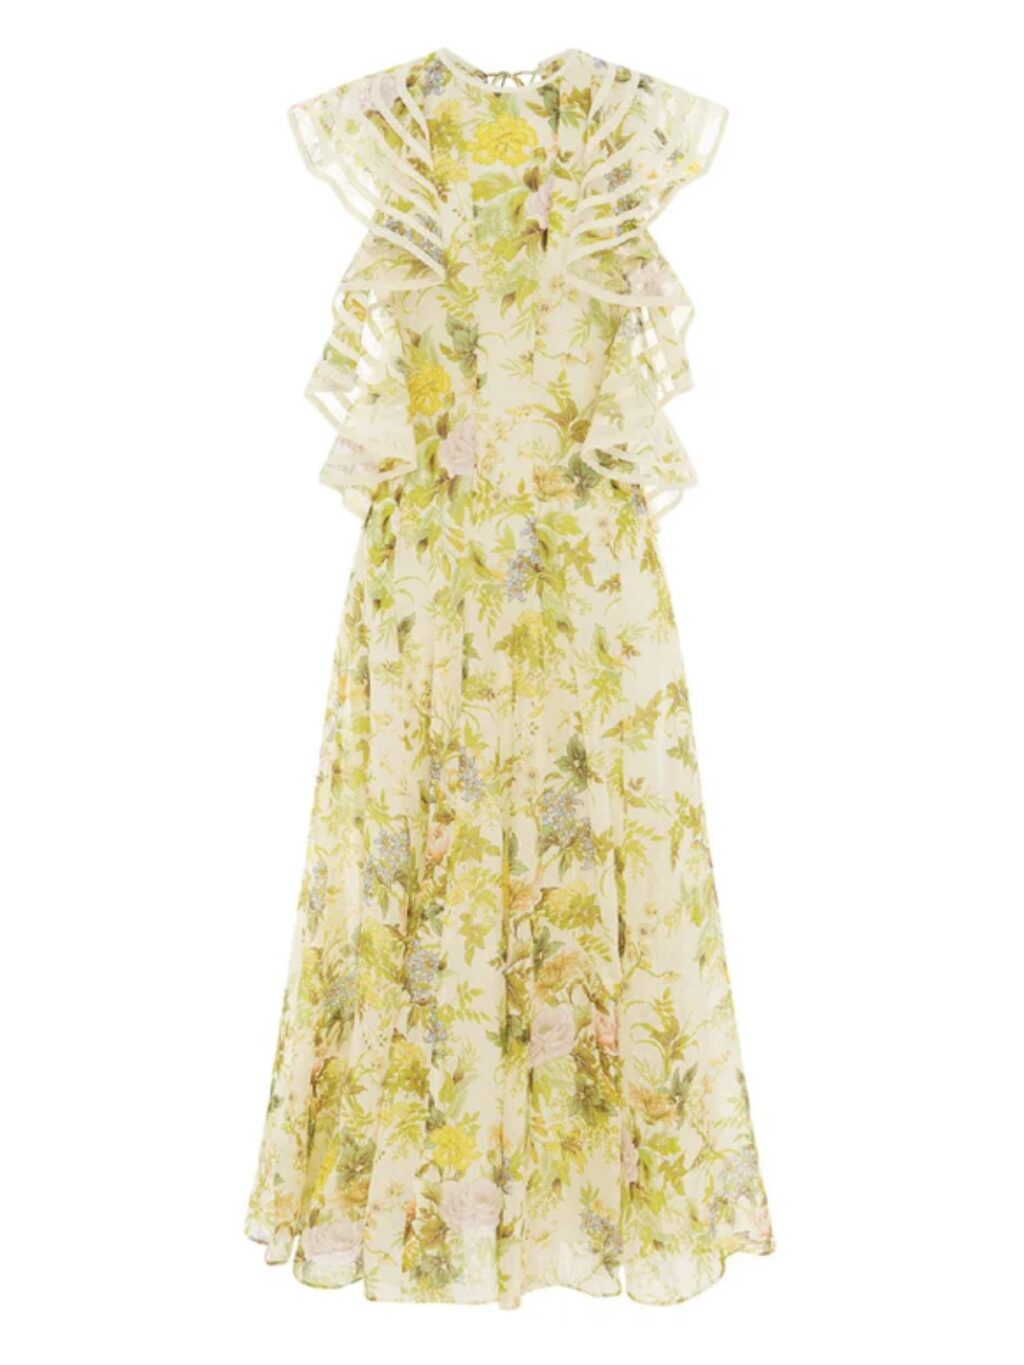 Alemais Eden Flounce Midi Dress. Floral yellow garden party dress for hire.